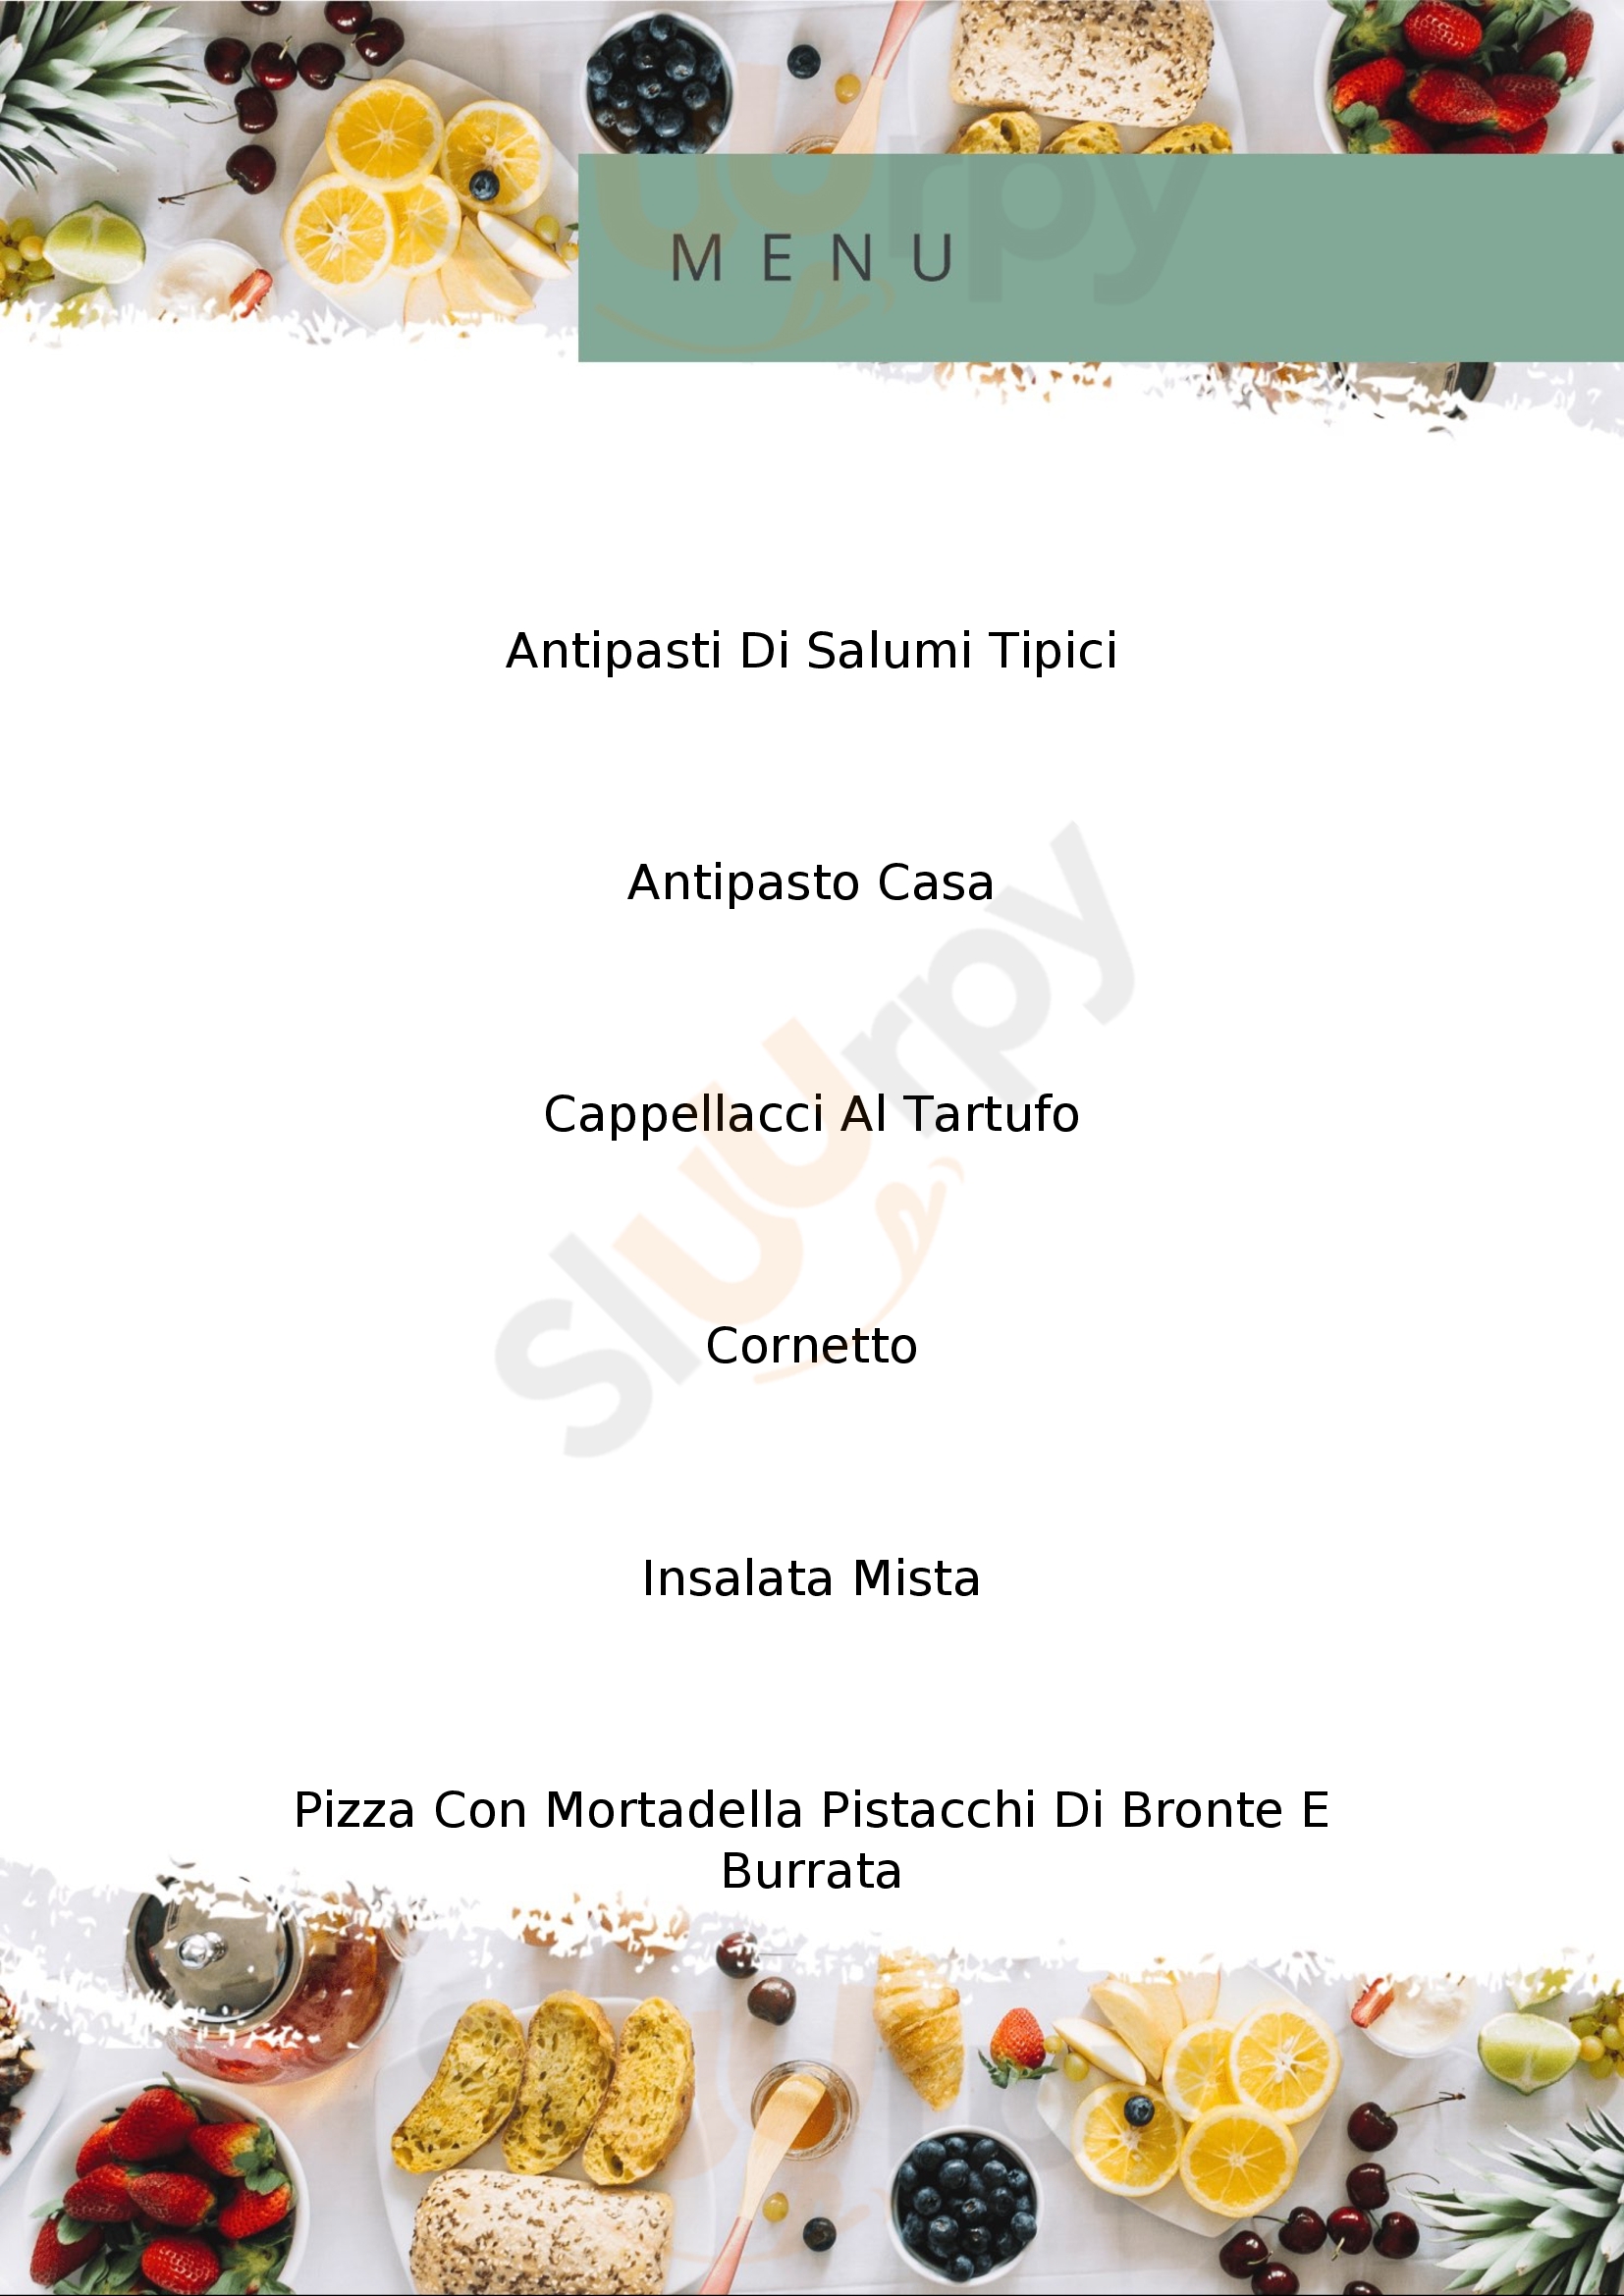 Pizzeria Il Calesse Barberino Di Mugello menù 1 pagina